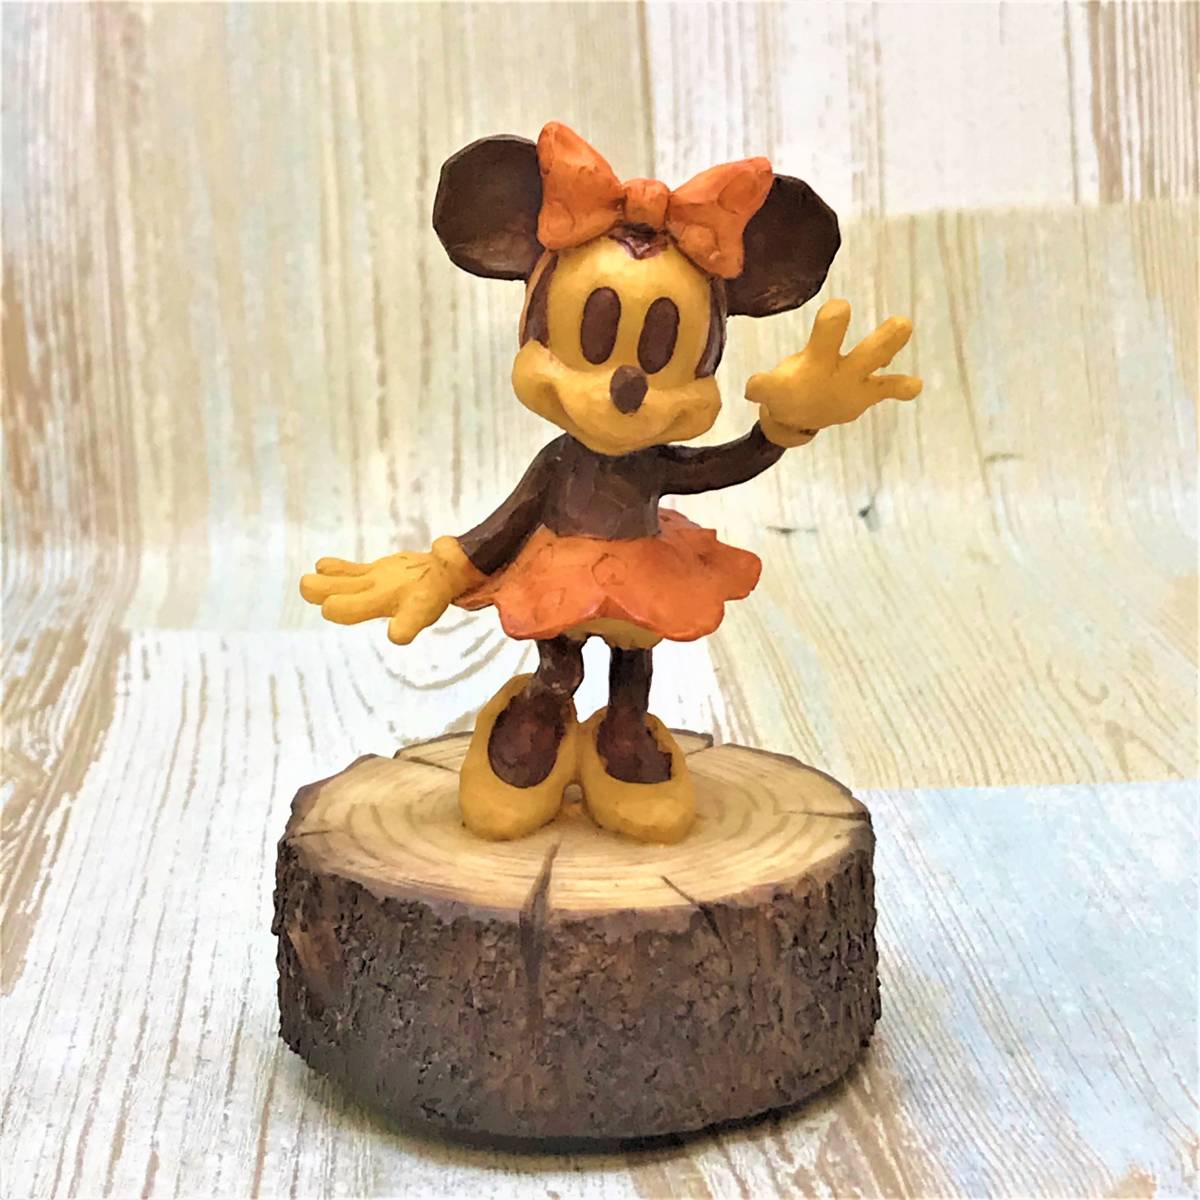 レア★ミニーマウス Minnie Mouse ミニー 陶器製 フィギュア 木製風 オルゴール フィギュア 小さな世界★ディズニー TDL Disney_画像2